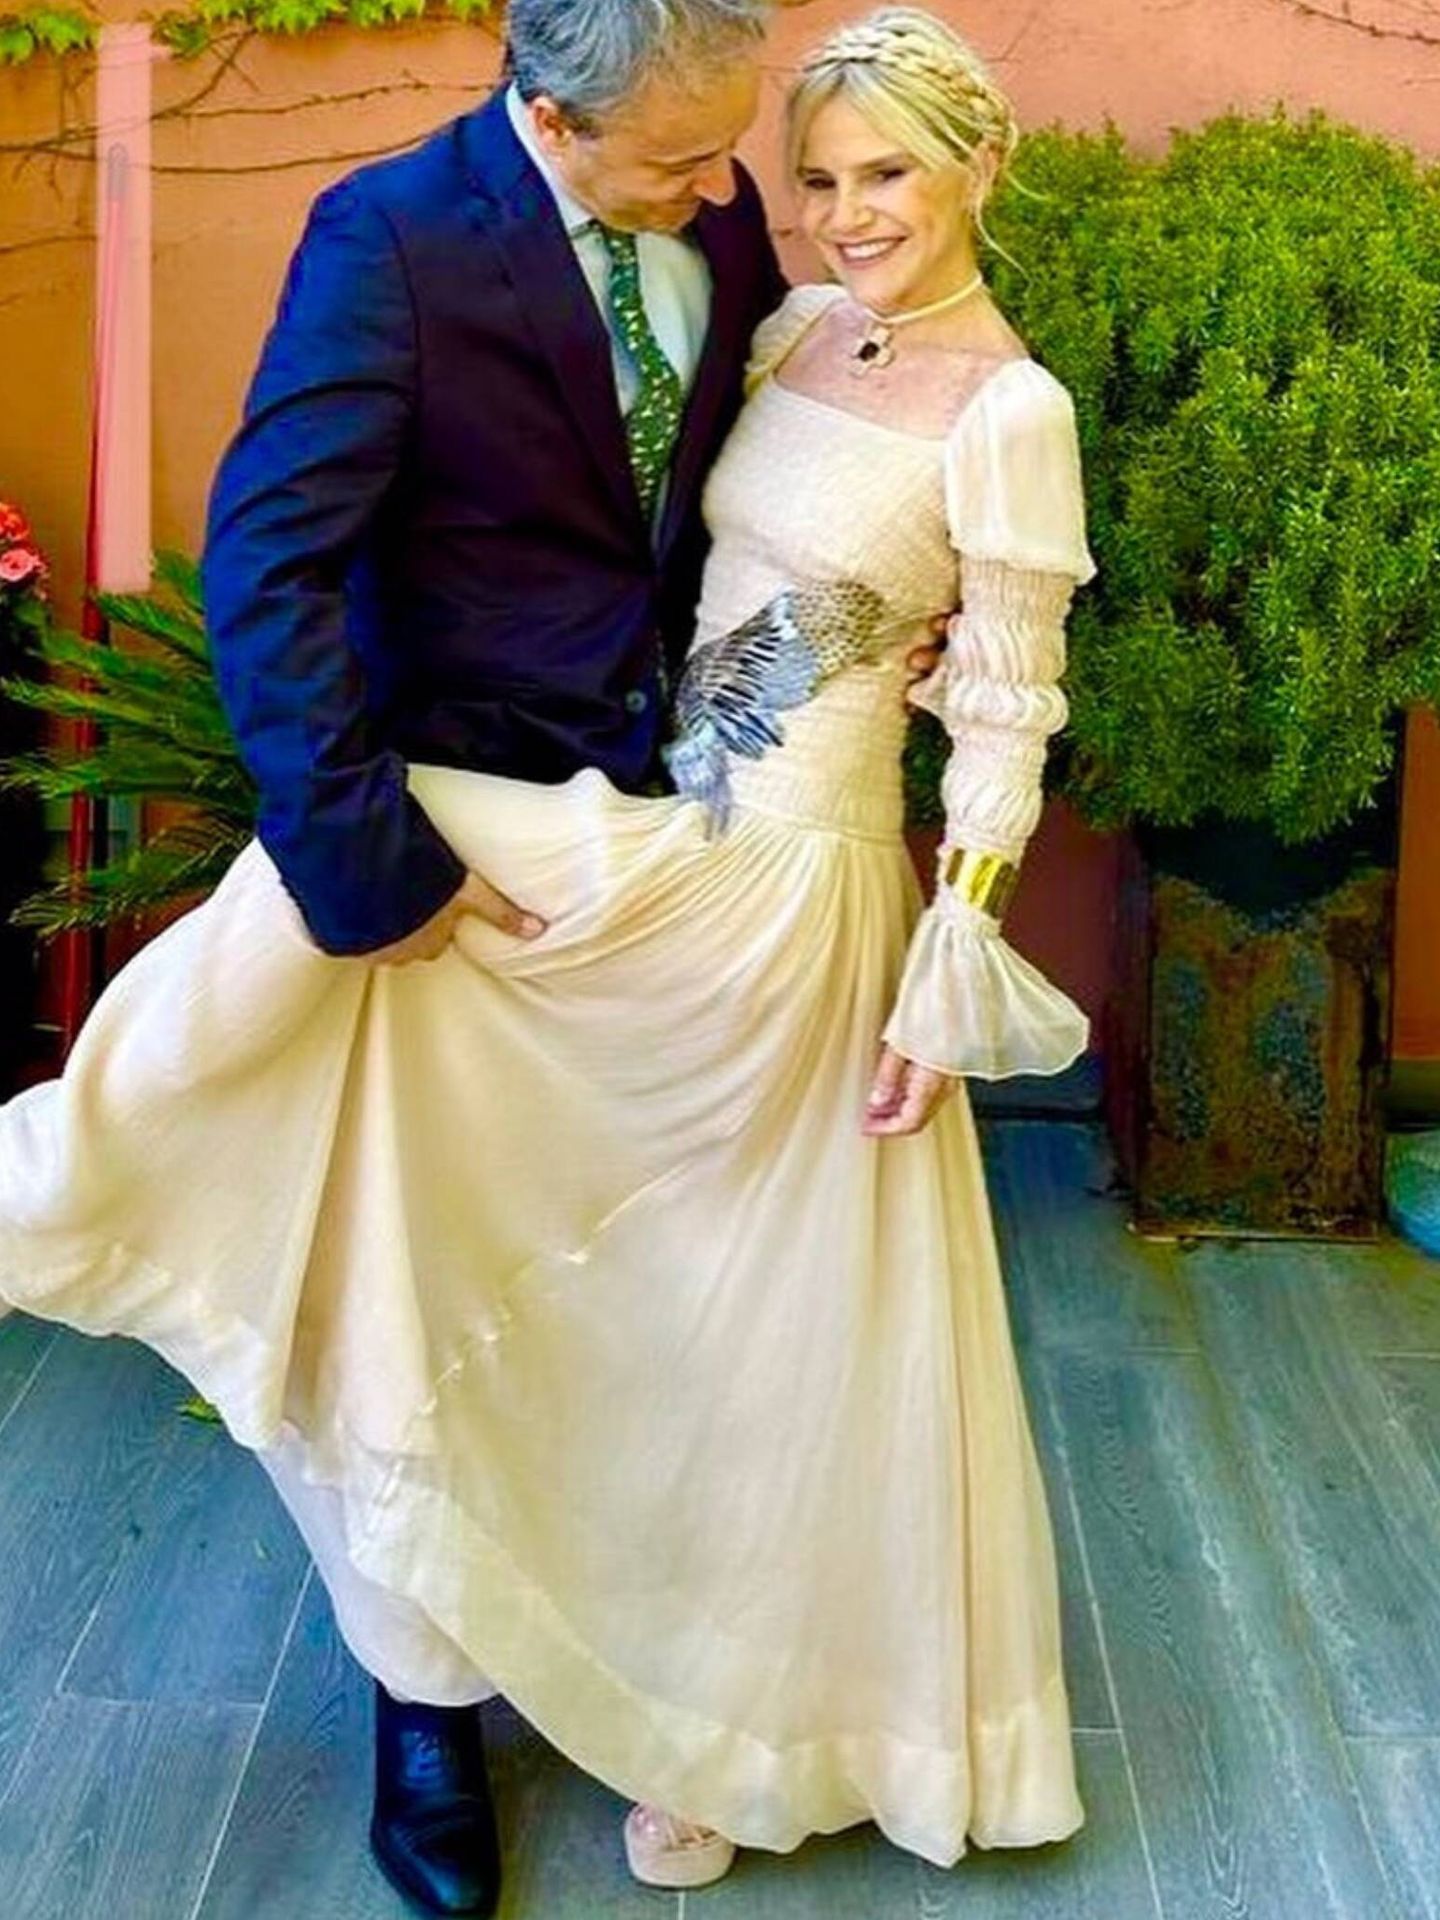 Eugenia Martínez de Irujo y Narcís Rebollo, preparados para la boda de Tamara Falcó. (Instagram/@eugeniamartinezdeirujo)